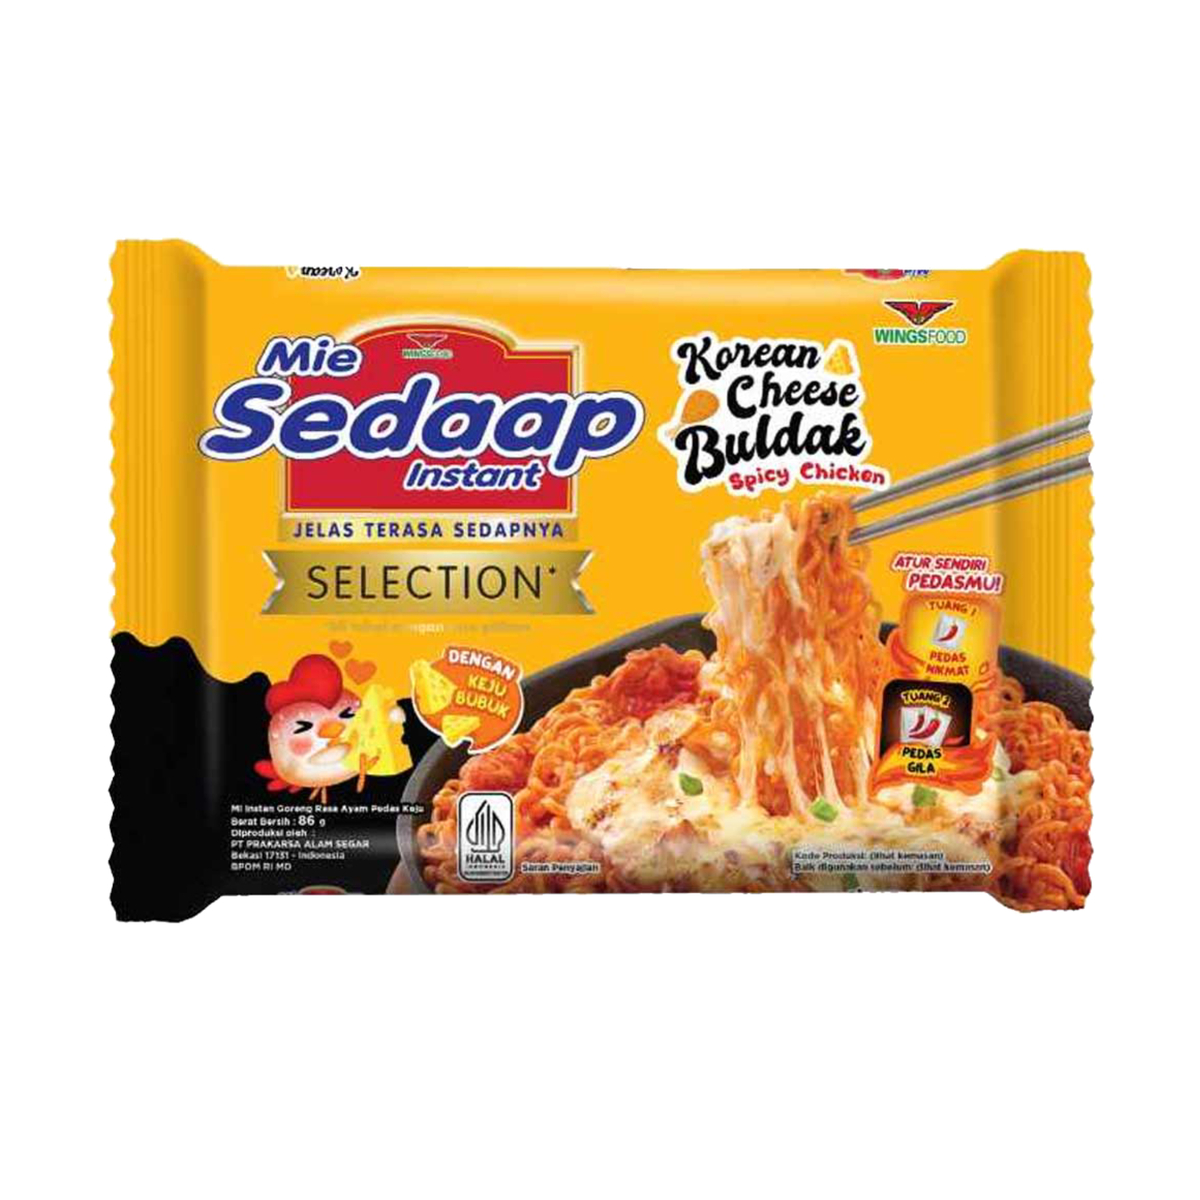 Sedaap Noodle Korean Cheese Buldak 86g